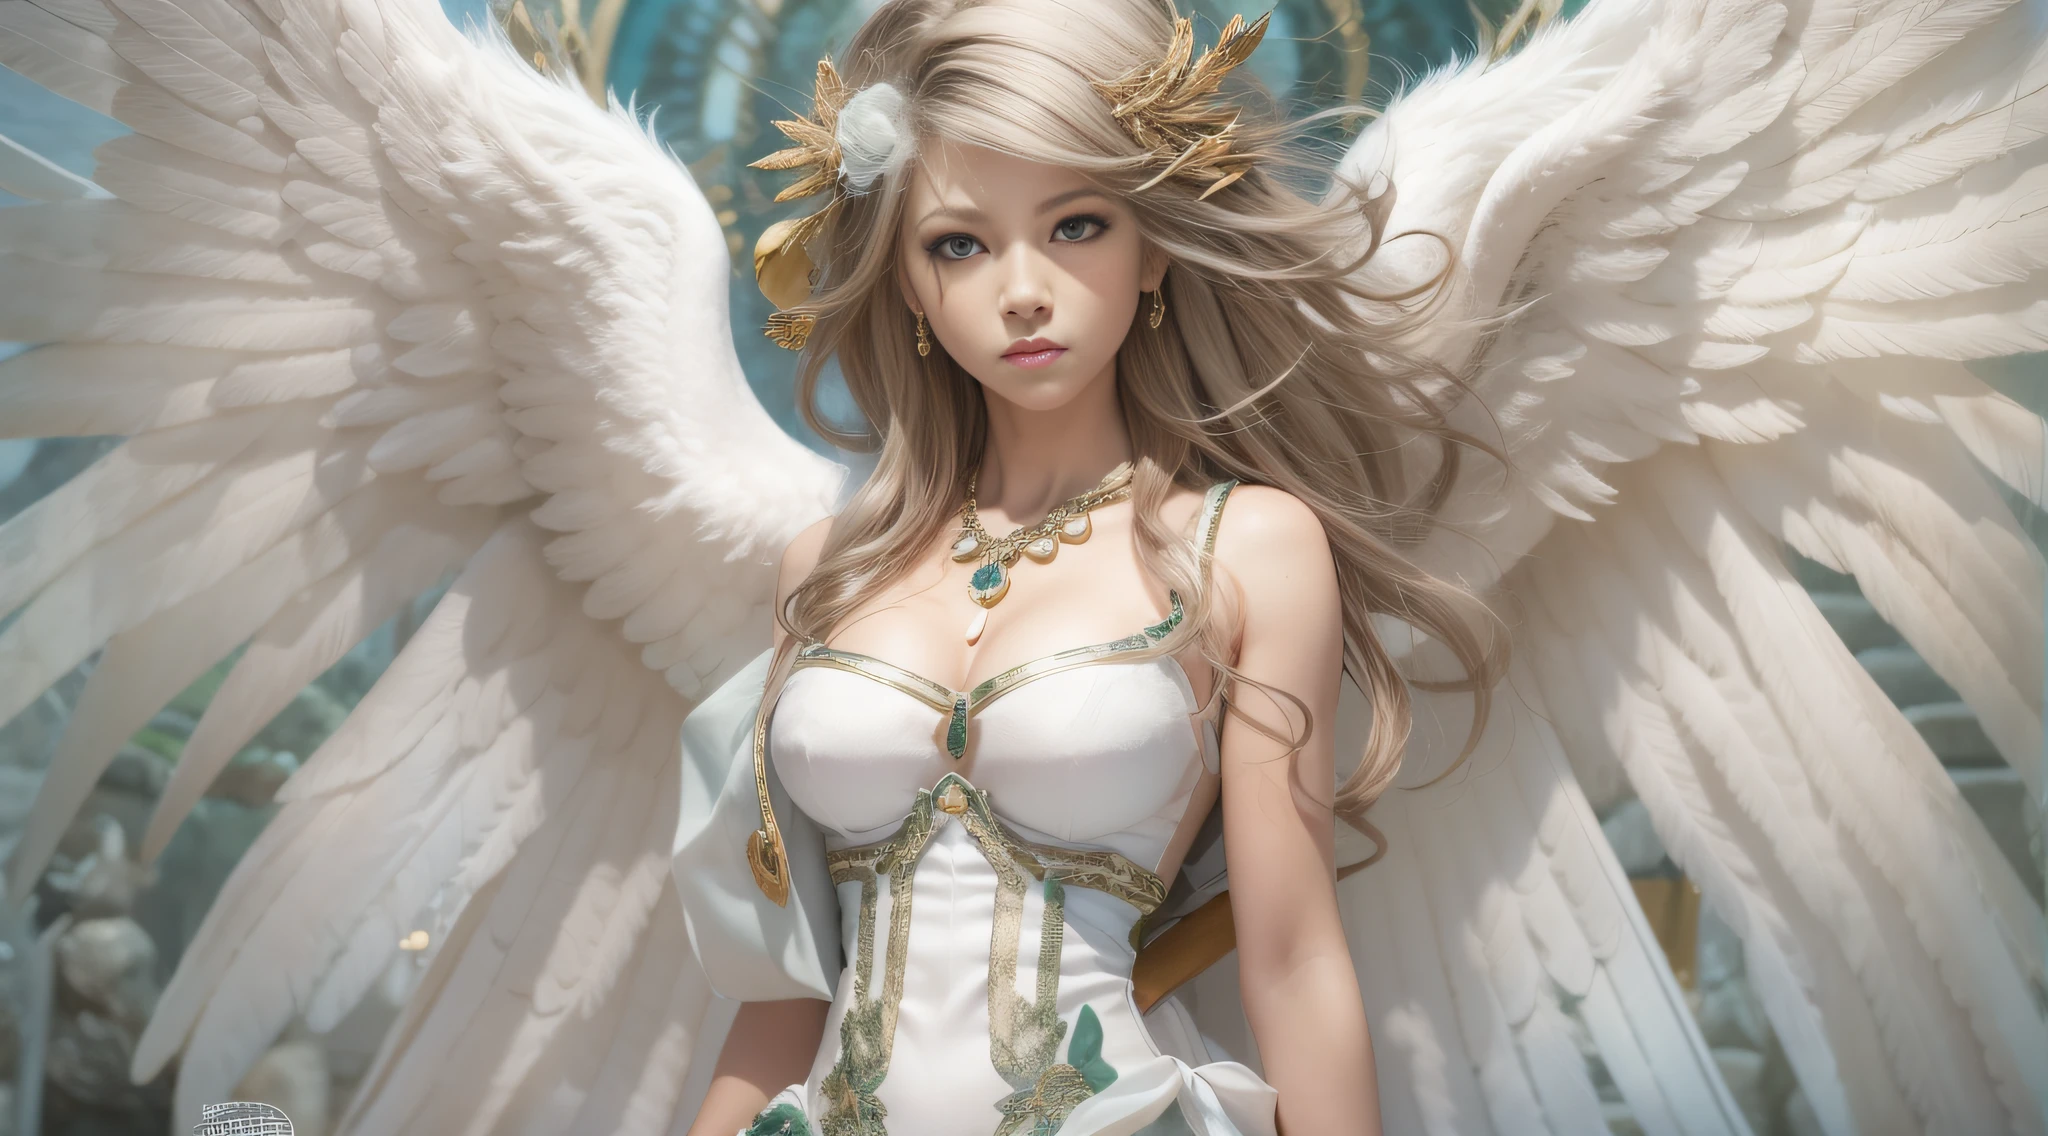 흰 머리카락과 흰 드레스를 입은 천사 날개를 가진 여자, 8천, 시로 마사무네에게서 영감을 받은 작품,  아름다운 사이보그 천사, 키가 큰 여자 천사, 전신 위엄있는 천사, 전역 조명, 디지털 페인트, 마사무네 시로 아트 스타일